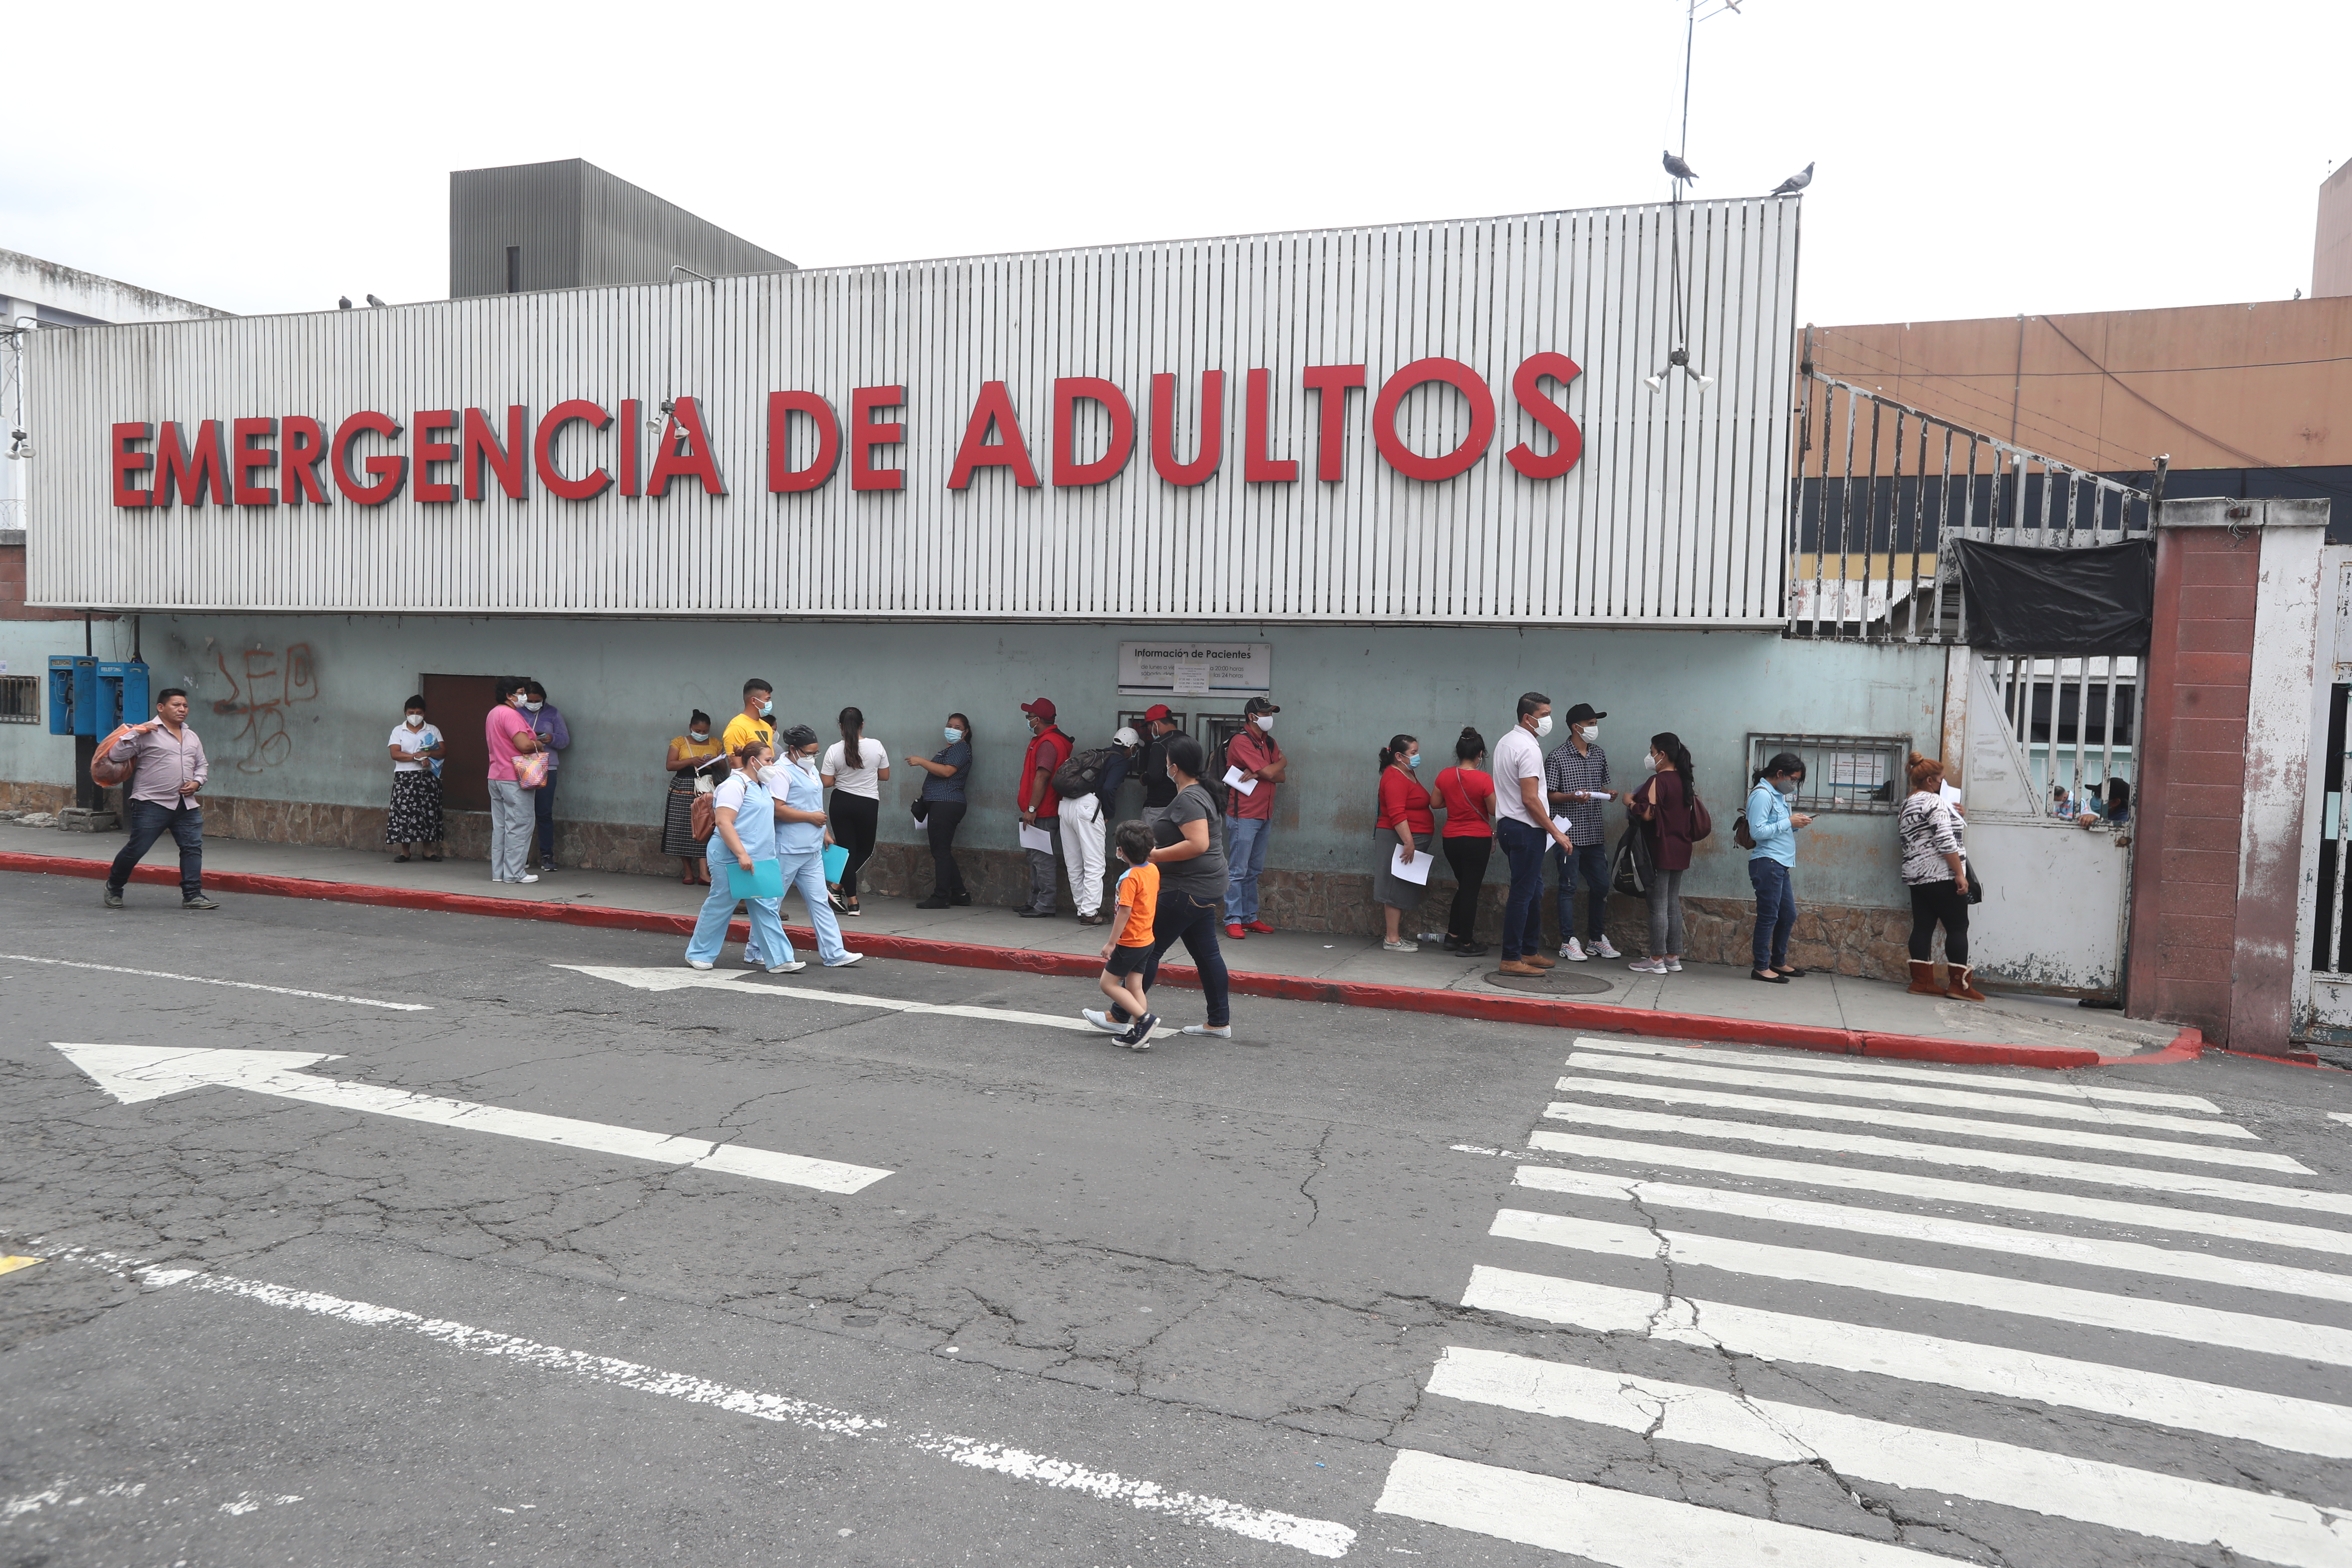 Cientos de personas haciendo fila en el hospital San Juan de Dios muchas personas madrugaron para realizarse pruebas de covid-19.
(Foto Prensa Libre: HemerotecaPL)